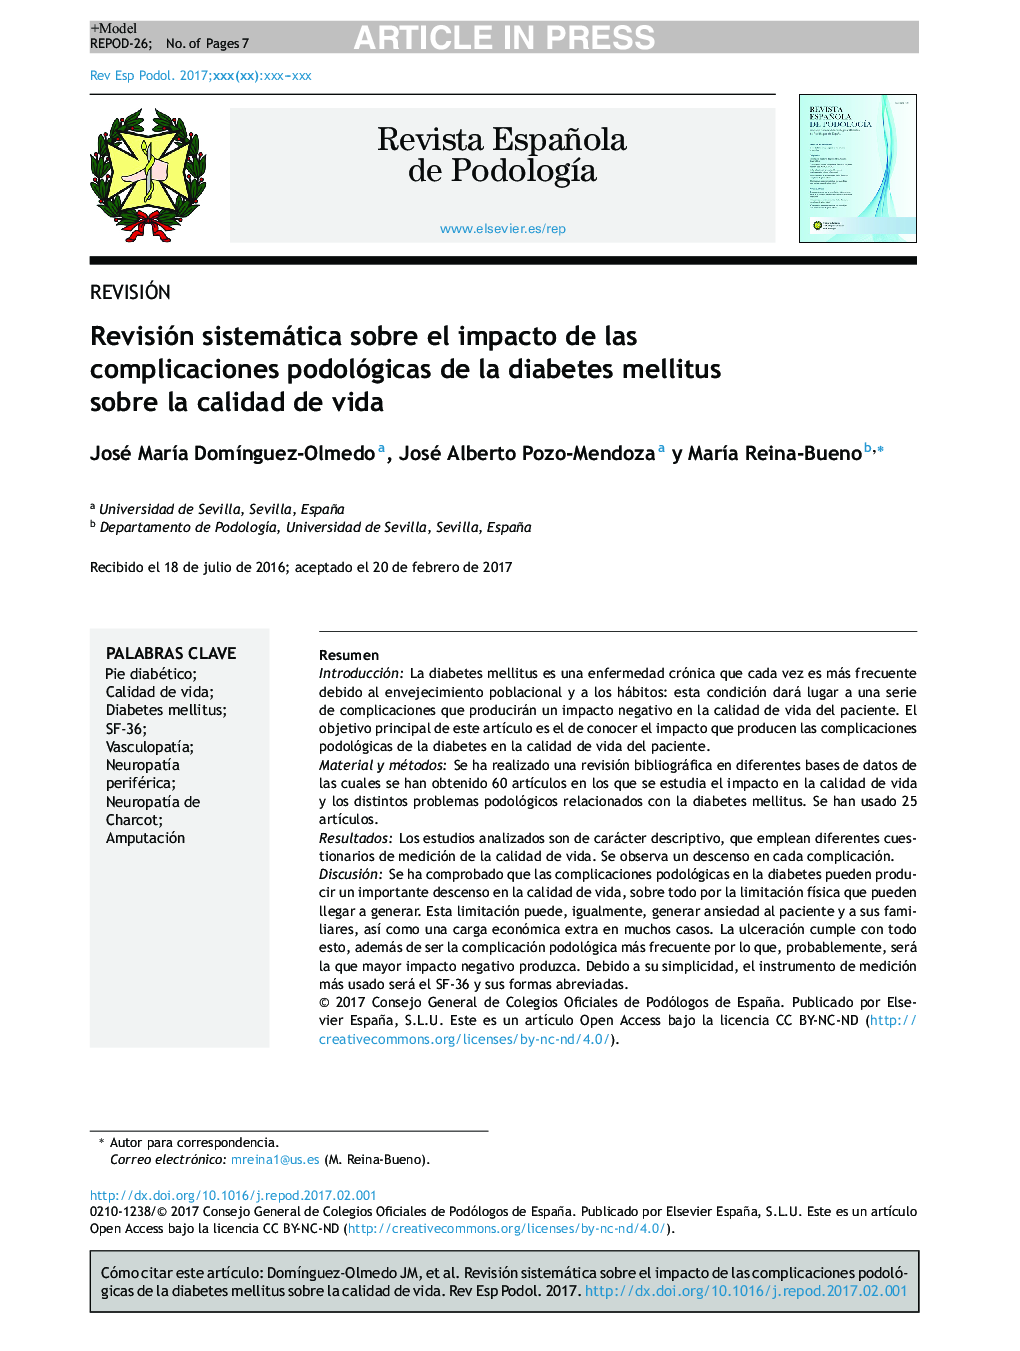 Revisión sistemática sobre el impacto de las complicaciones podológicas de la diabetes mellitus sobre la calidad de vida